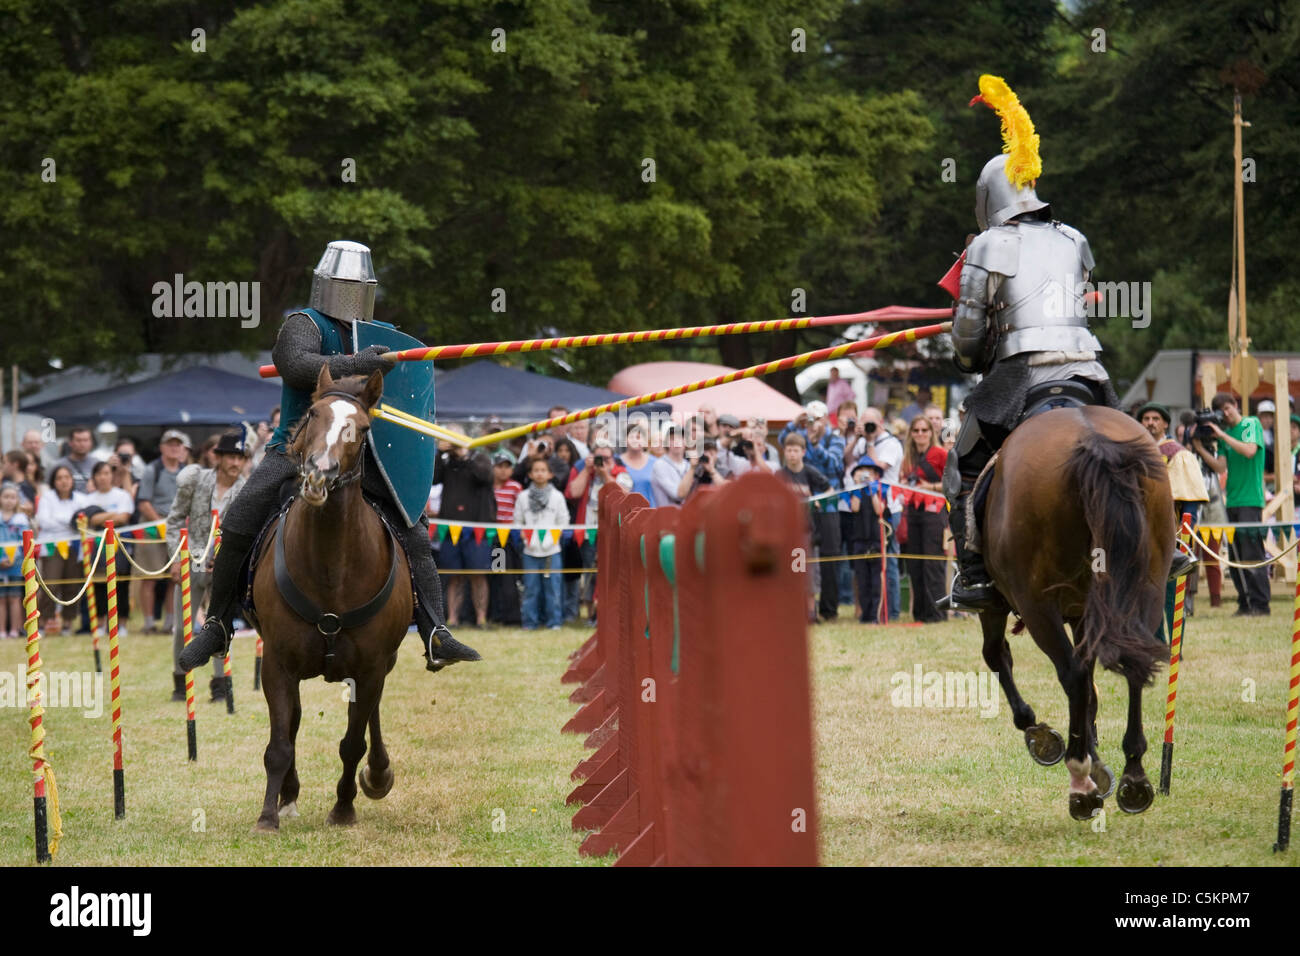 Deux chevaliers en armure sur le galop des chevaux bruns dans un tournoi de joutes, une lance, rupture, Nouvelle Zélande Banque D'Images